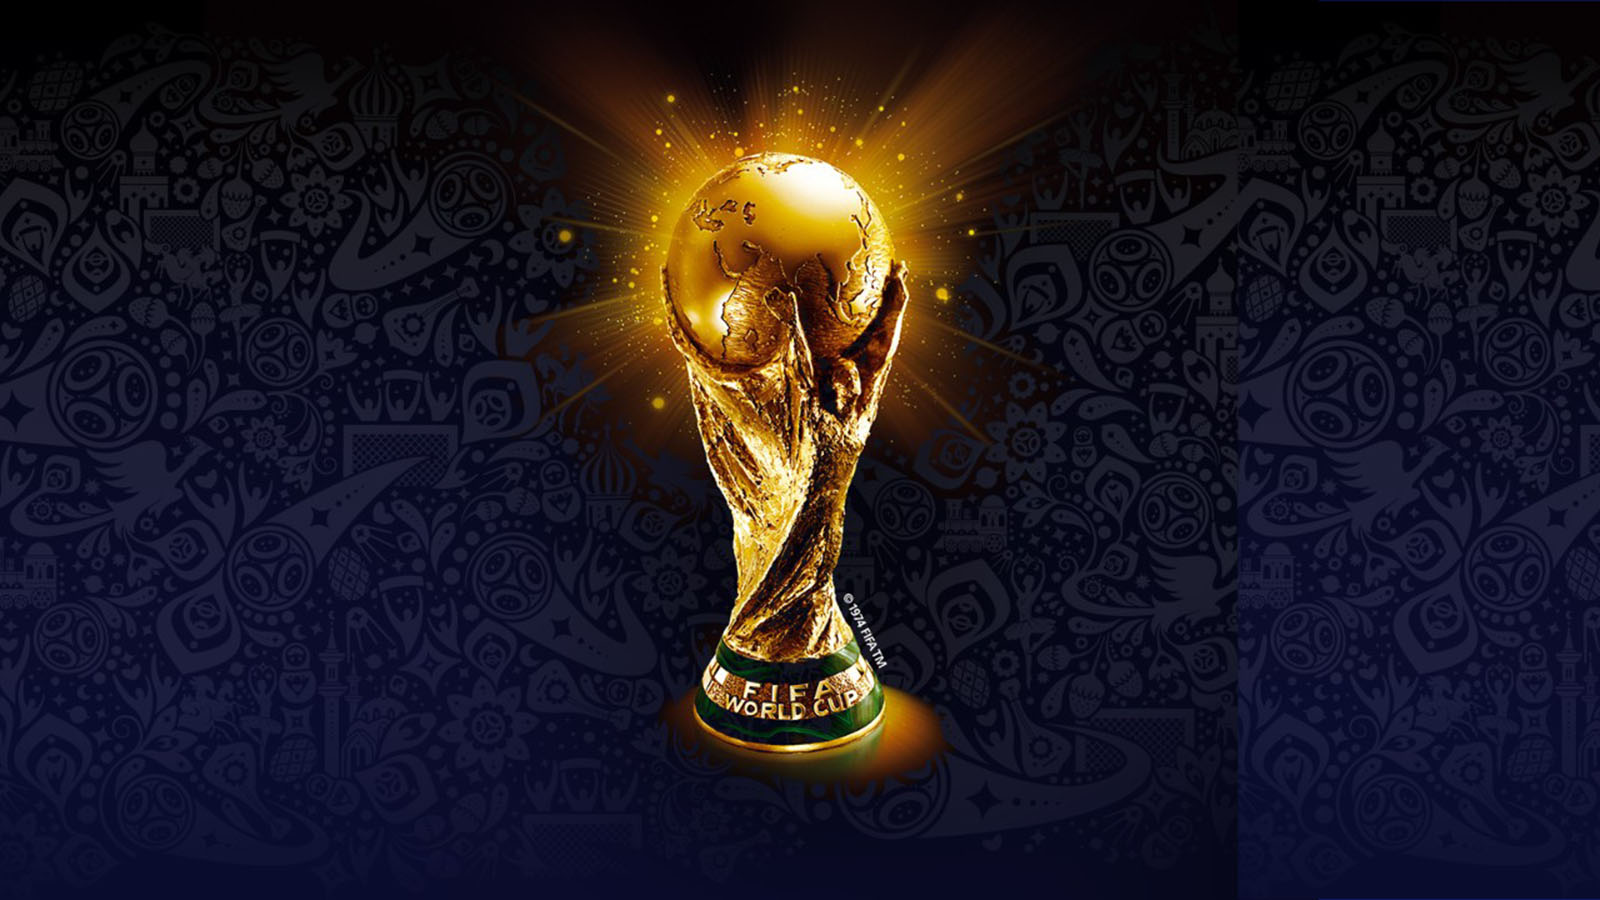 Visa traz ao Brasil o trófeu da Copa do Mundo